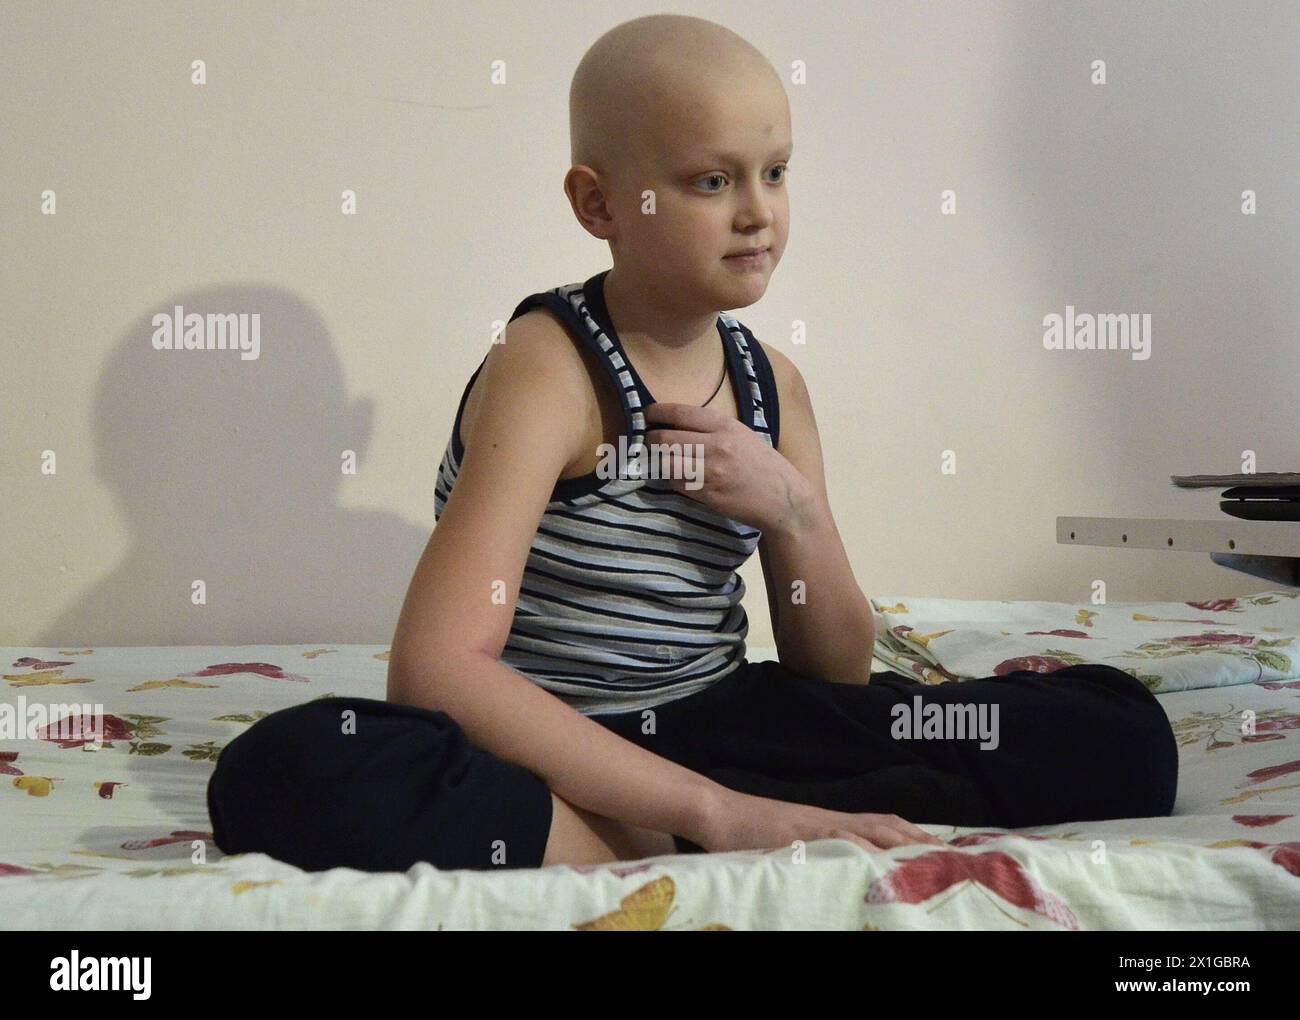 Kinderkrankenhaus Nr. 16 in Charkow Ukraine, wo viele Kinder behandelt werden, die an Leukämie oder anderen Krankheiten im Zusammenhang mit der Reaktorkatastrophe von Tscherobyl leiden, wurde am 23. März 2011 gefangen genommen. - 20110322 PD8940 - Rechteinfo: Rechte verwaltet (RM) Stockfoto